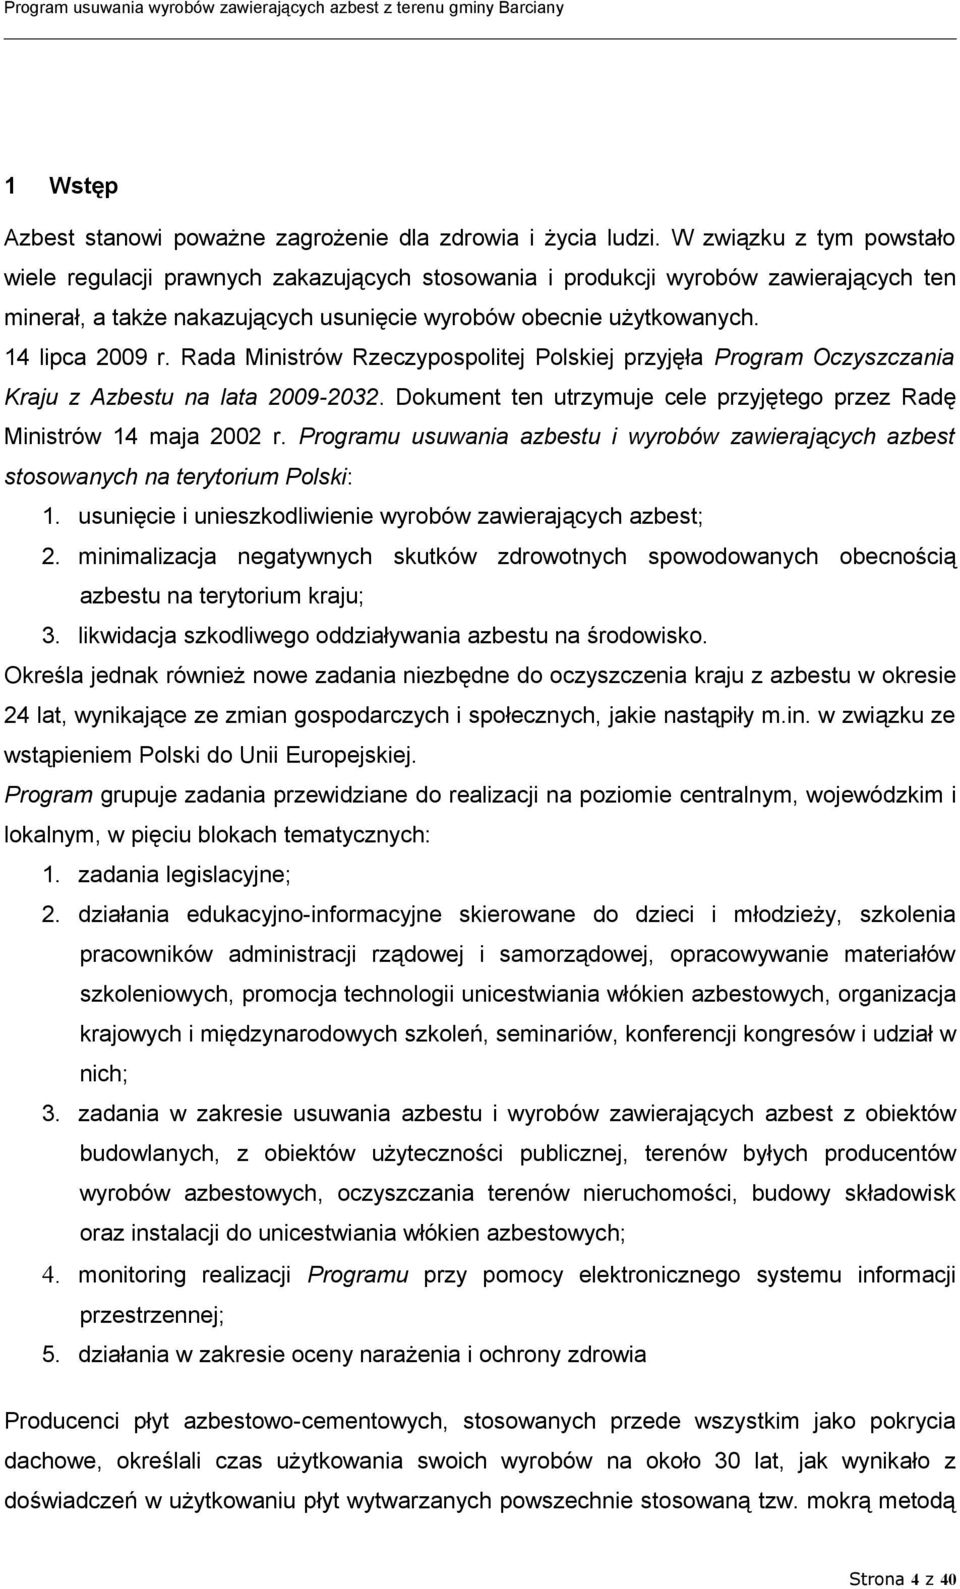 Rada Ministrów Rzeczypospolitej Polskiej przyjęła Program Oczyszczania Kraju z Azbestu na lata 2009-2032. Dokument ten utrzymuje cele przyjętego przez Radę Ministrów 14 maja 2002 r.